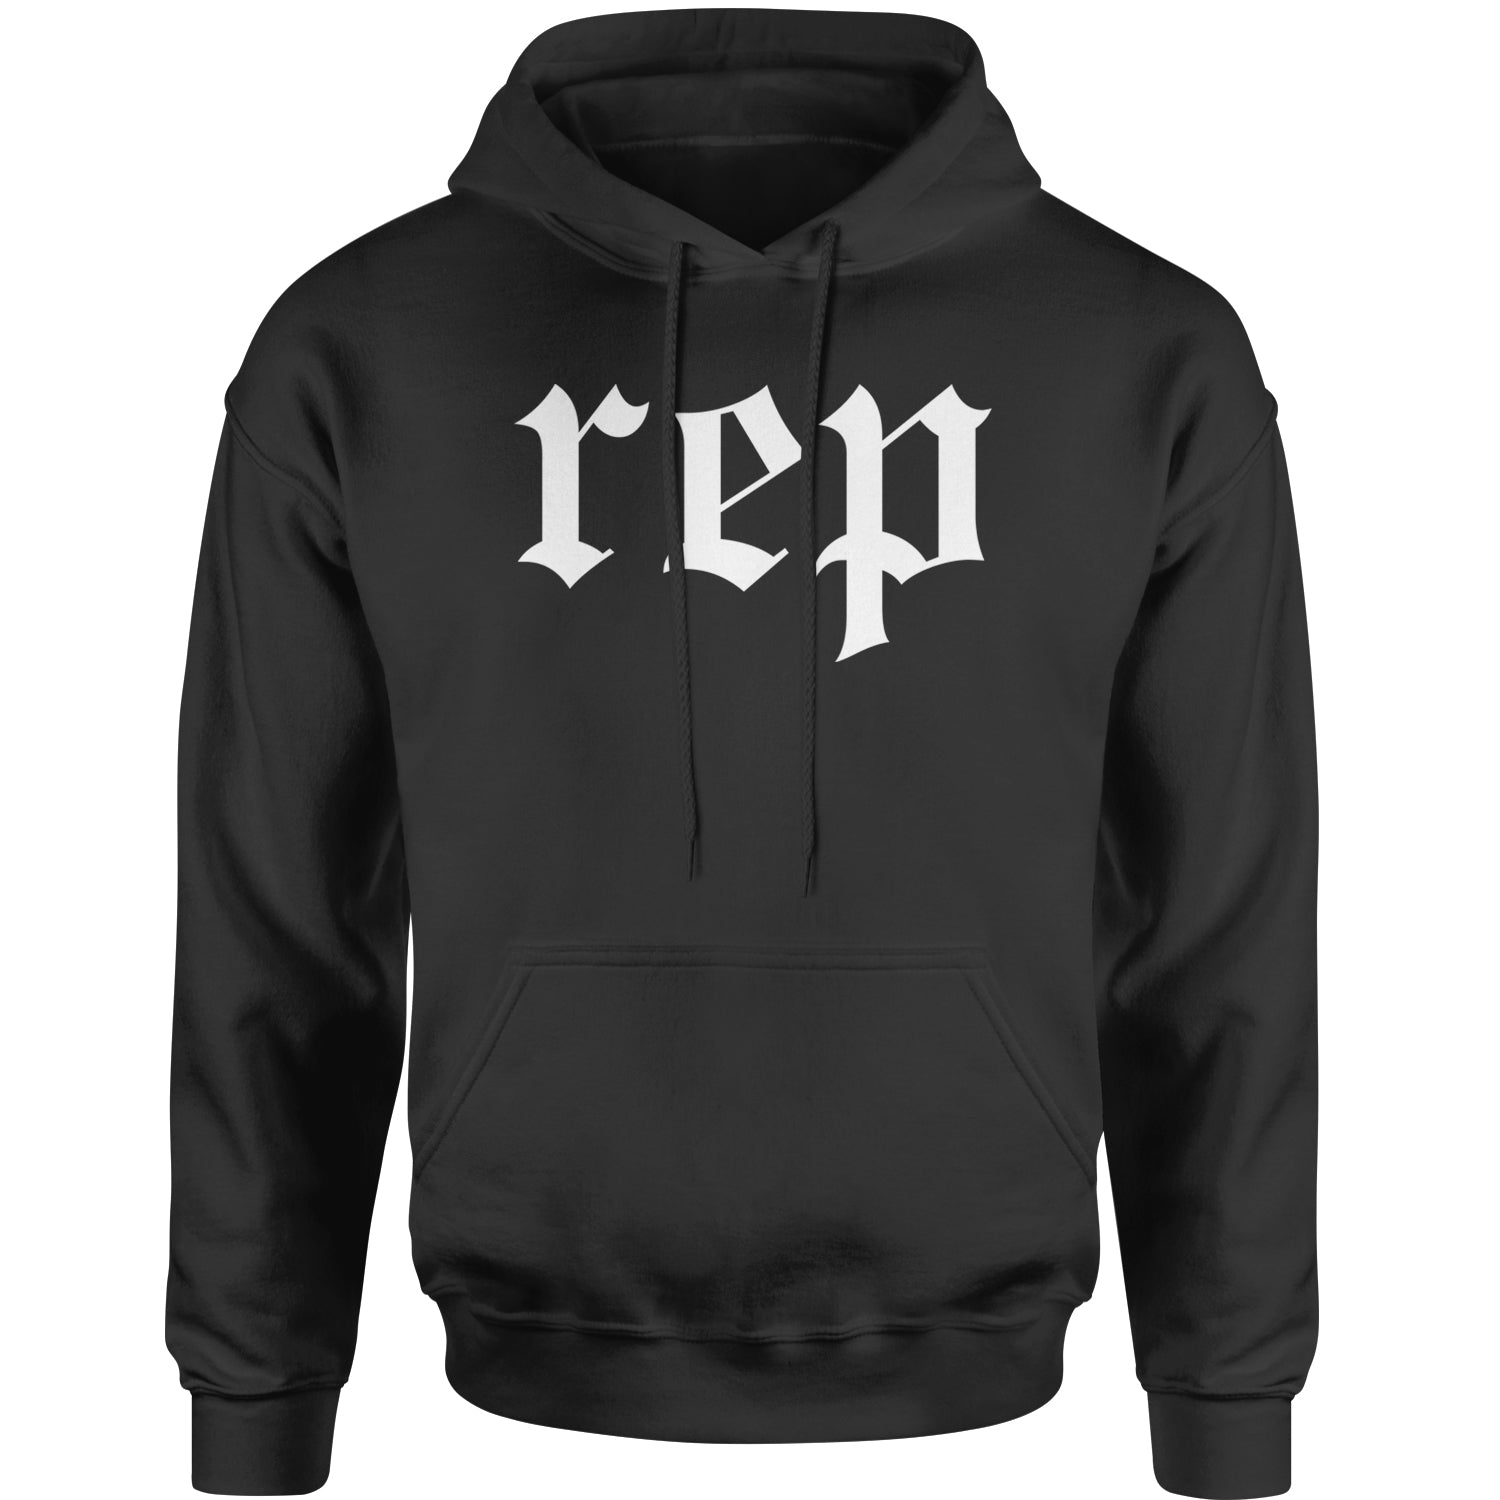 REP Reputation Music Lover Gift Fan Favorite Adult Hoodie Sweatshirt